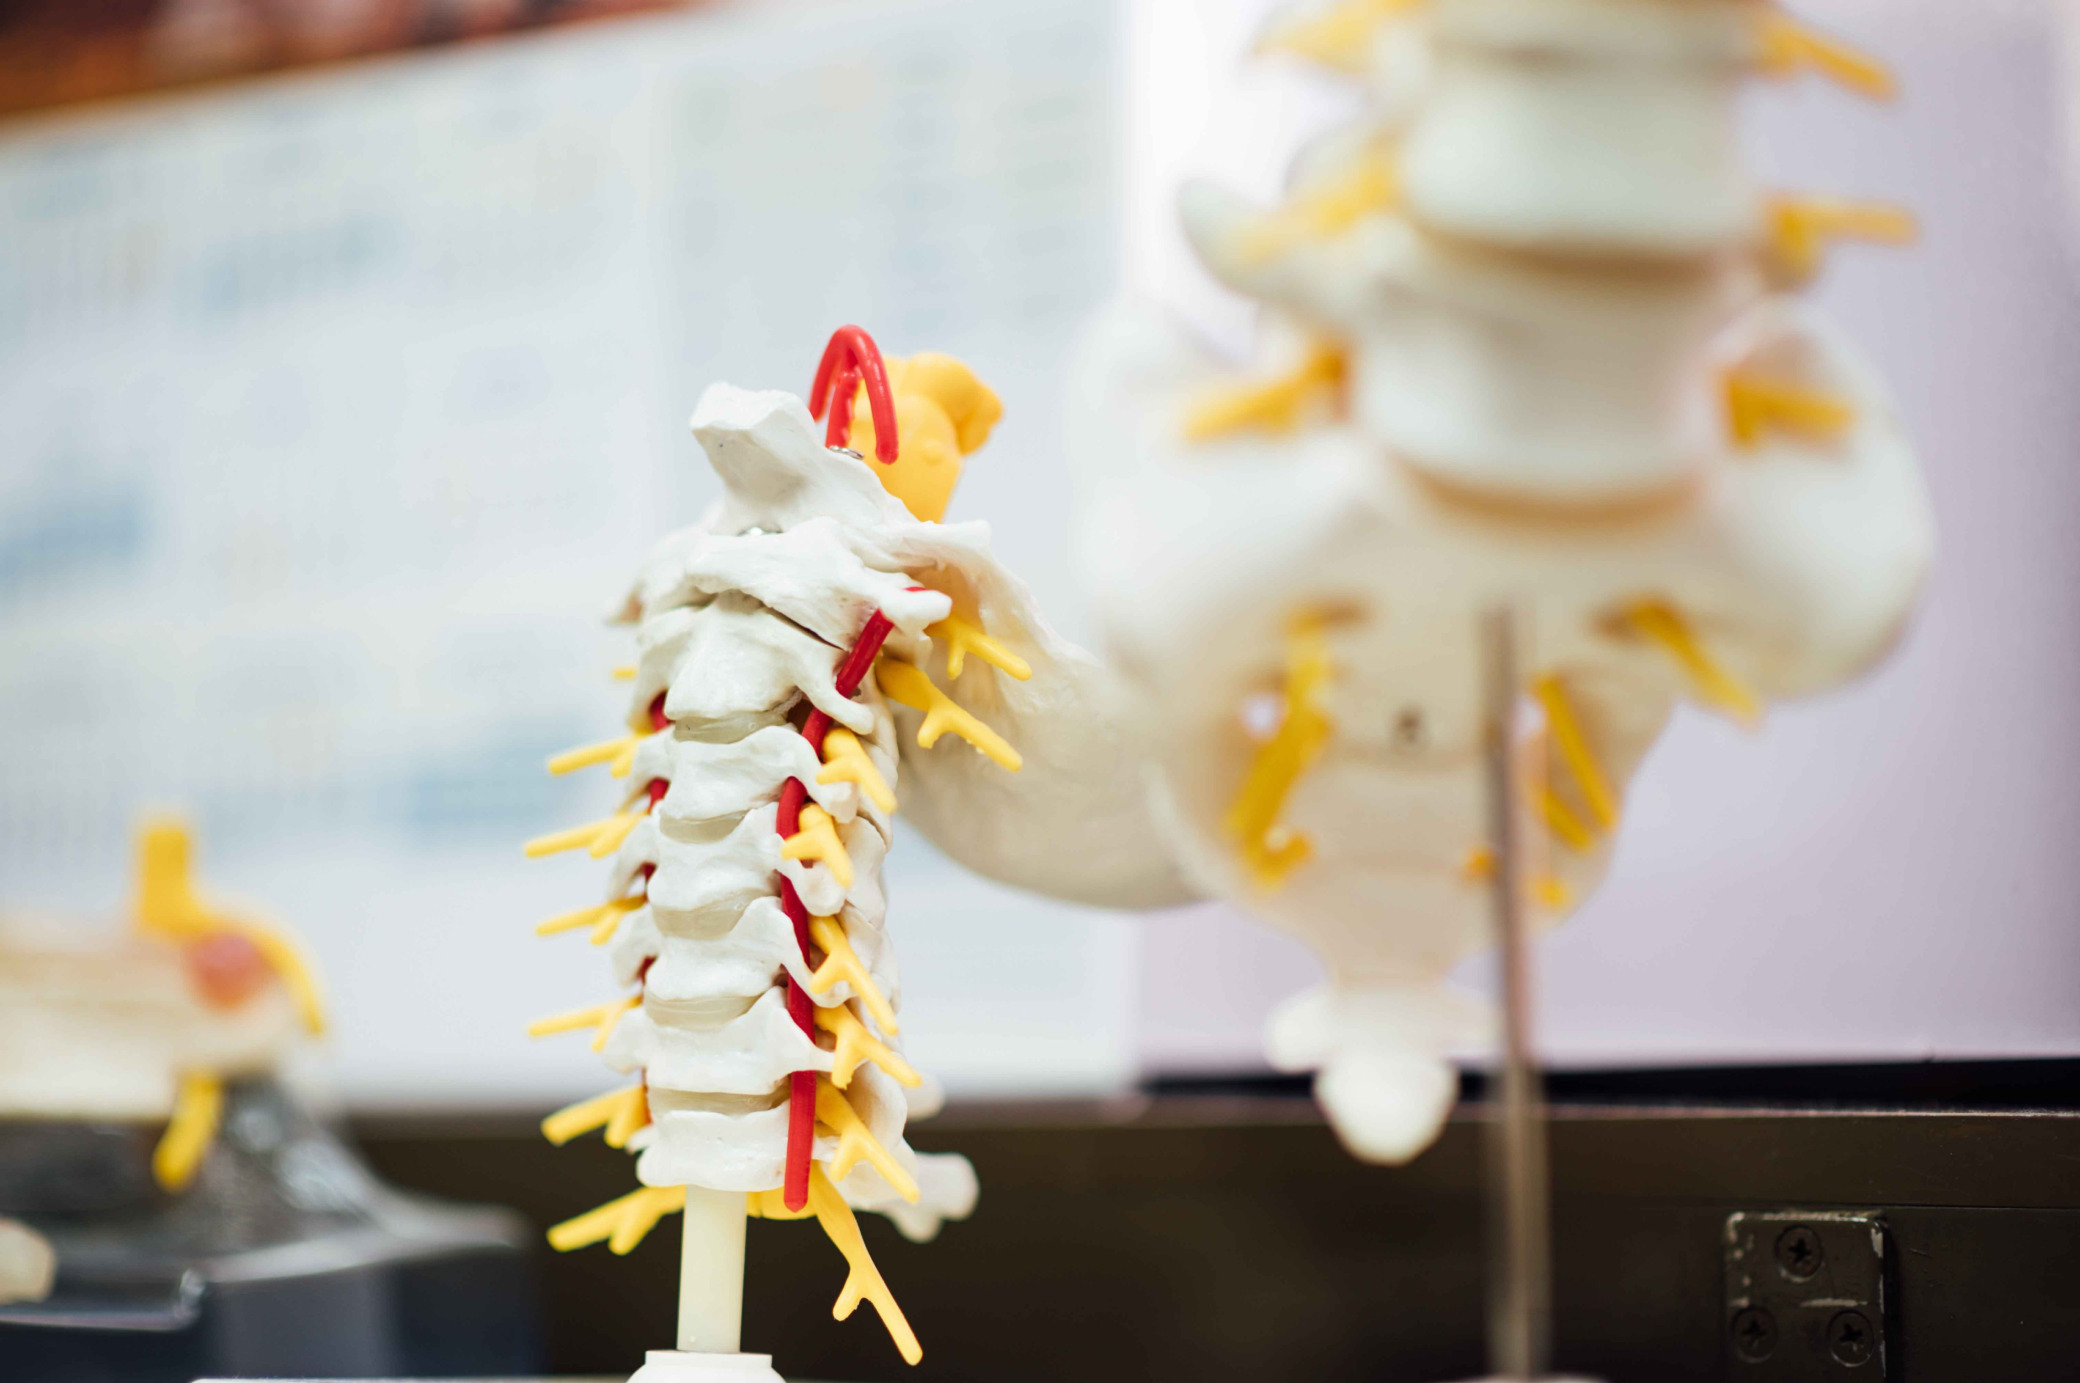 脊醫提供脊骨神經科治療